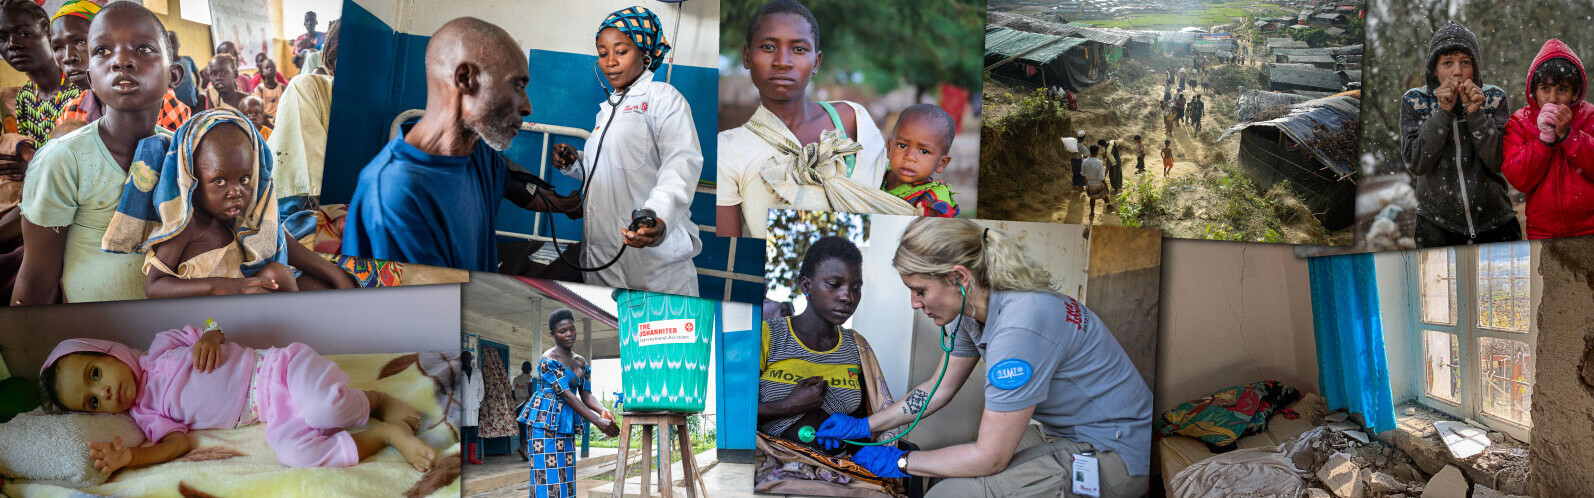 Collage von Bildern humanitärer Einsatzfälle weltweit